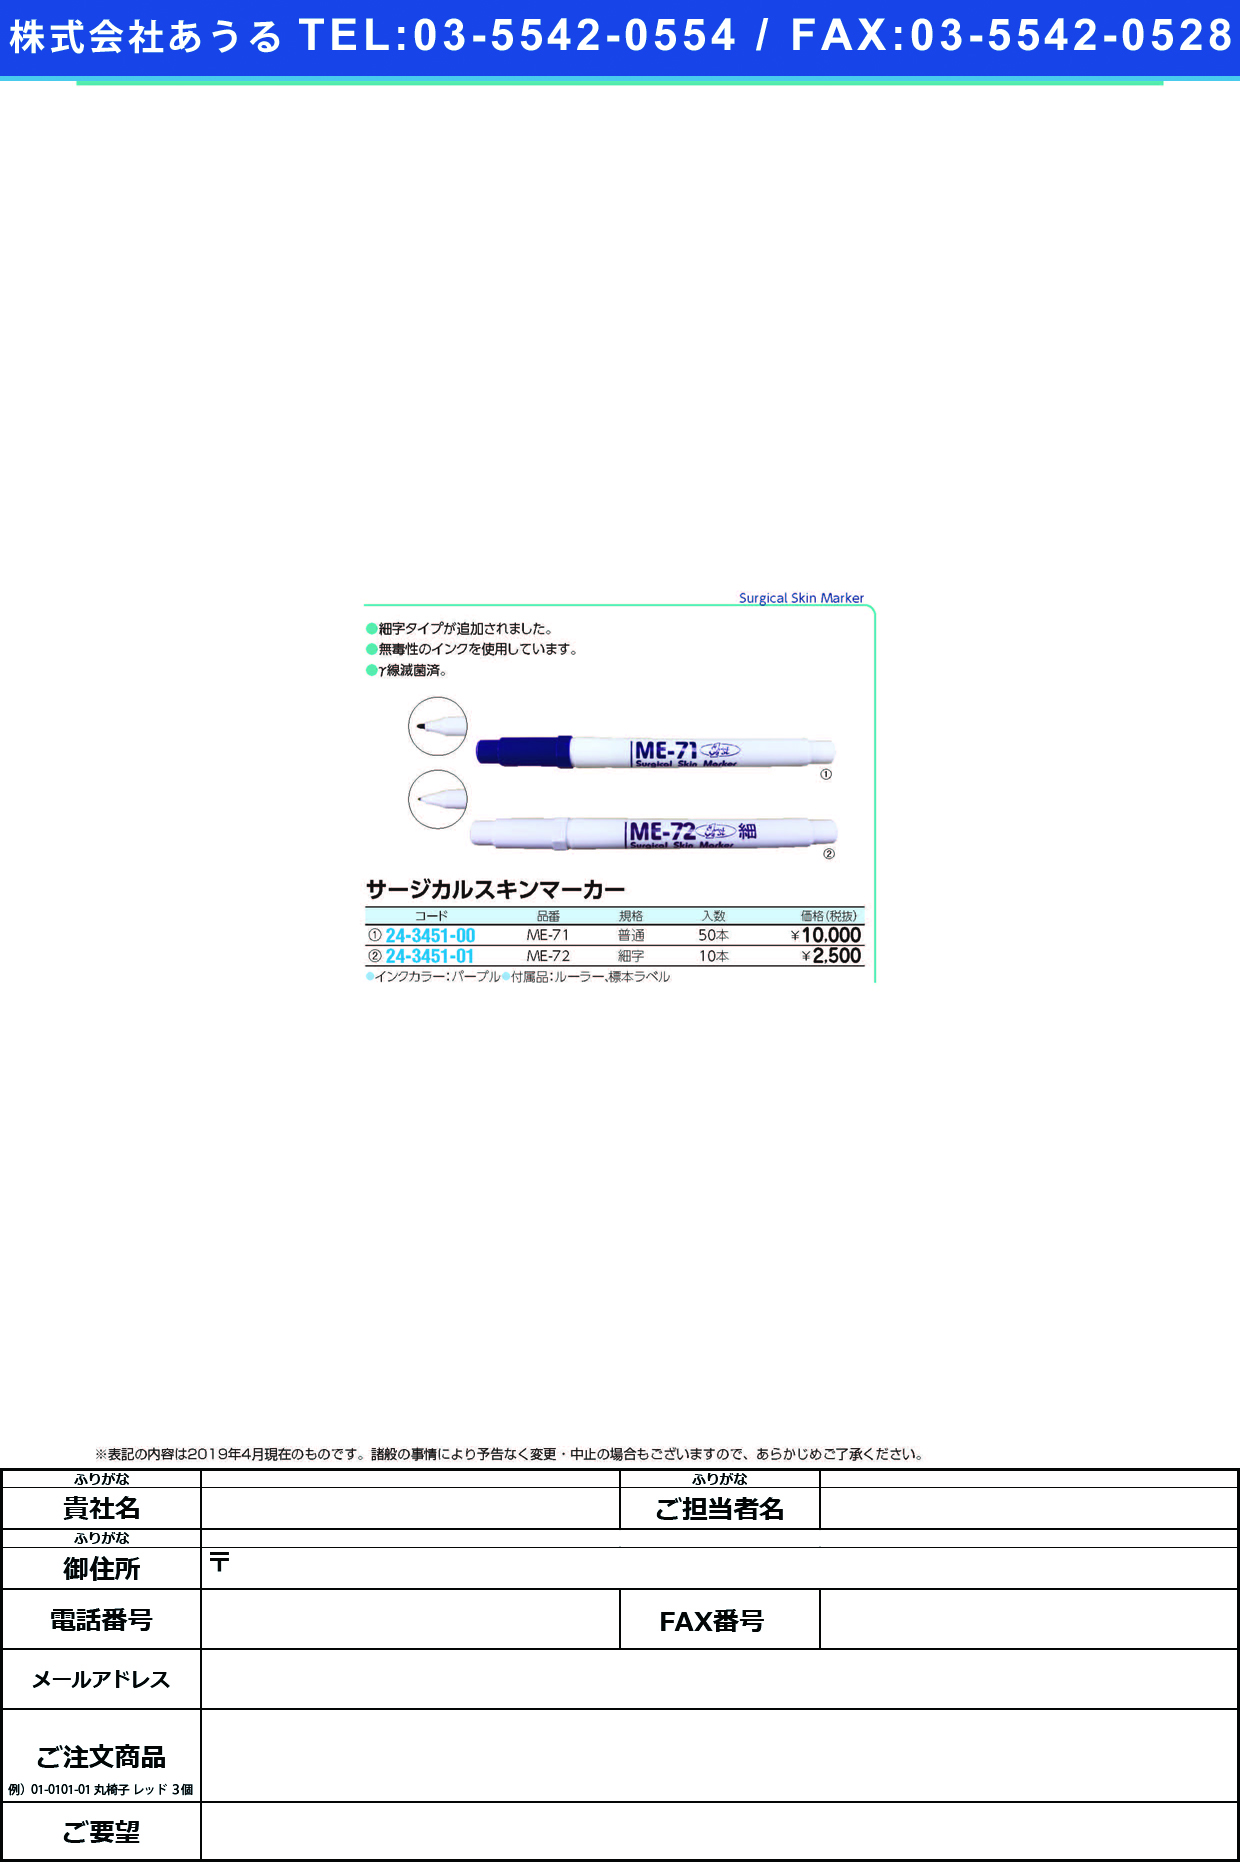 (24-3451-01)サージカルスキンマーカー ME-72(10ﾎﾟﾝｲﾘ) ｻｰｼﾞｶﾙｽｷﾝﾏｰｶｰ【1箱単位】【2019年カタログ商品】